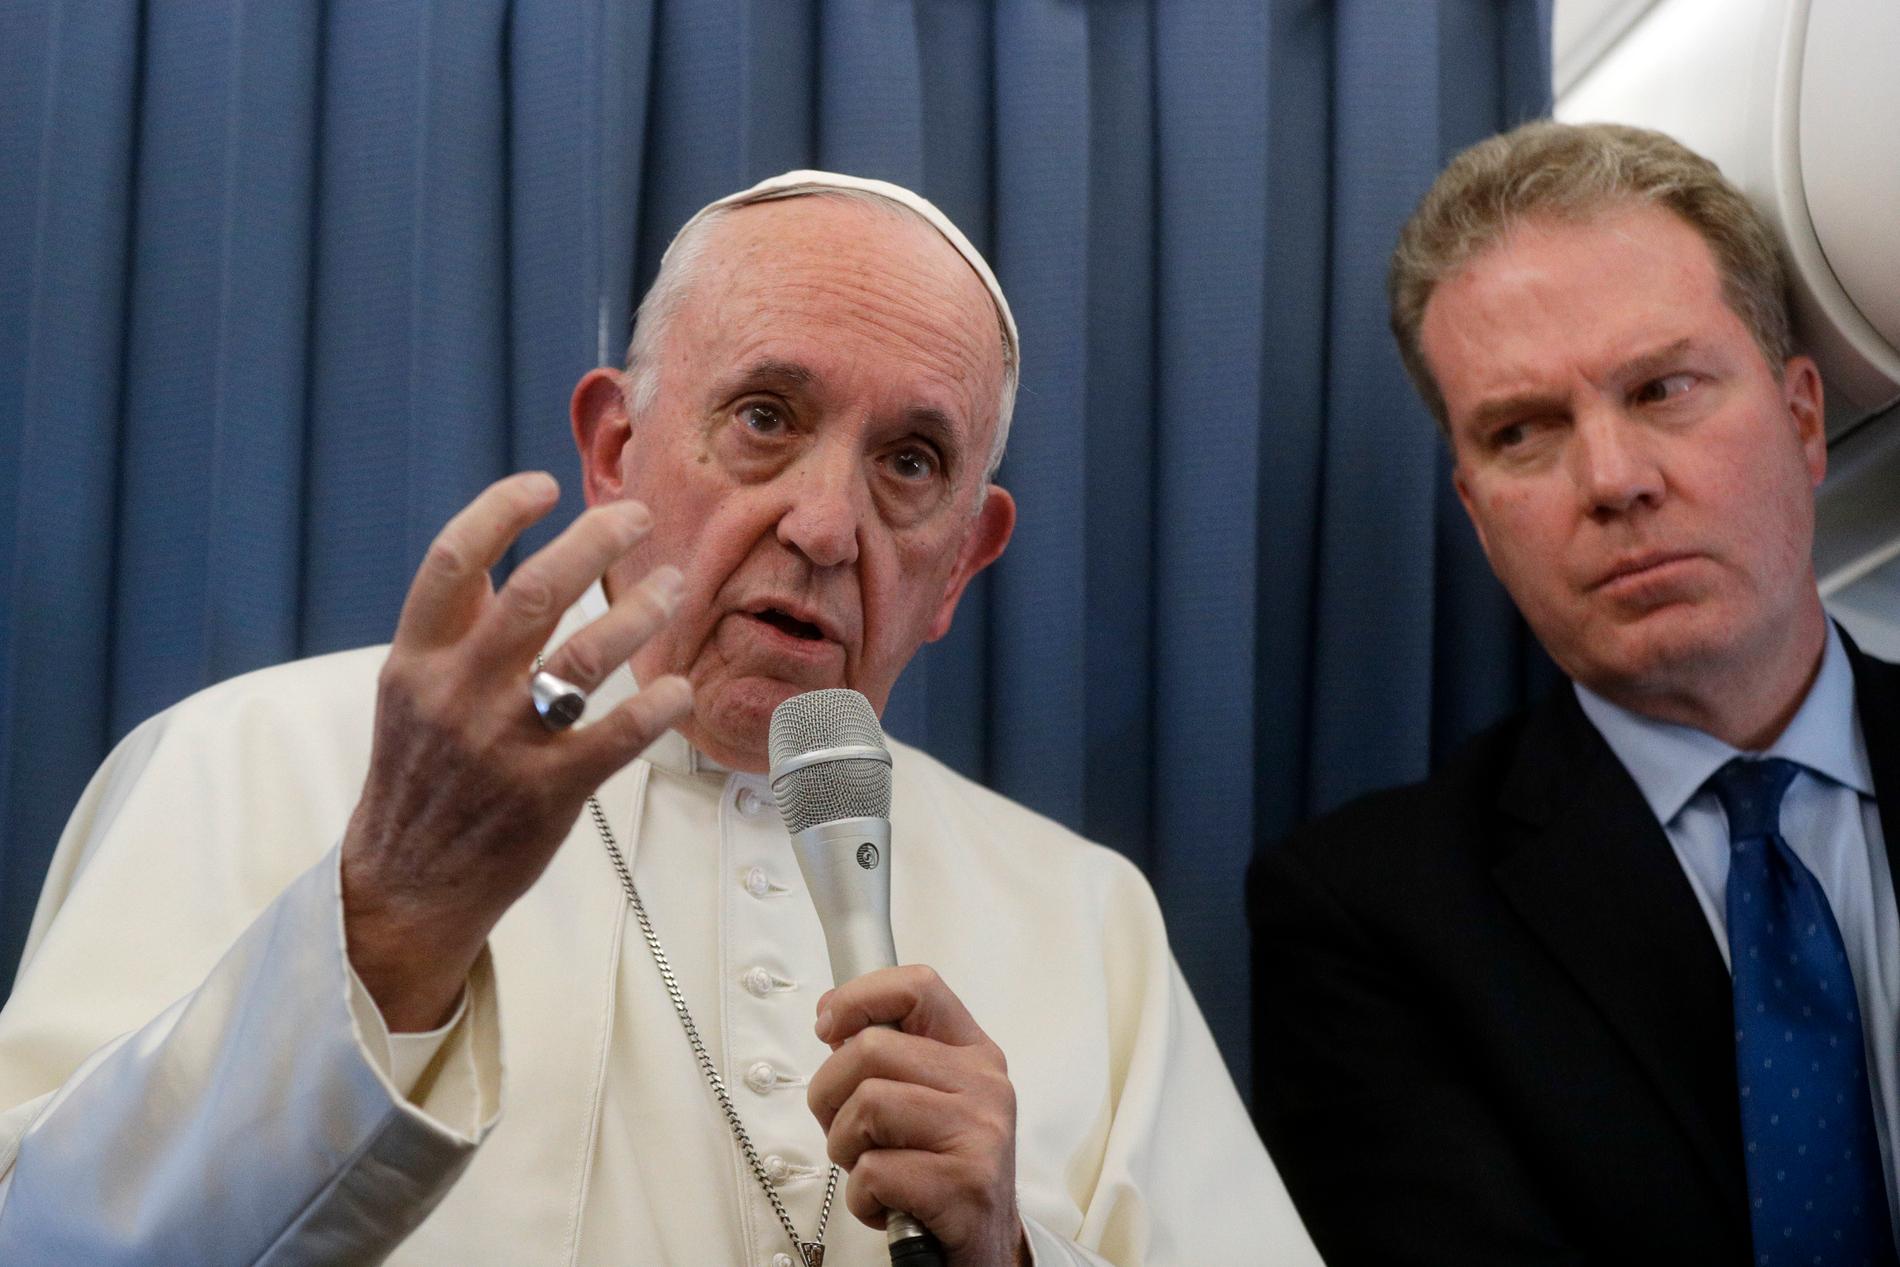 Påve Franciskus ville inte kommentera påståendena om att han skulle ha struntat i övergreppsanklagelser mot en kardinal.